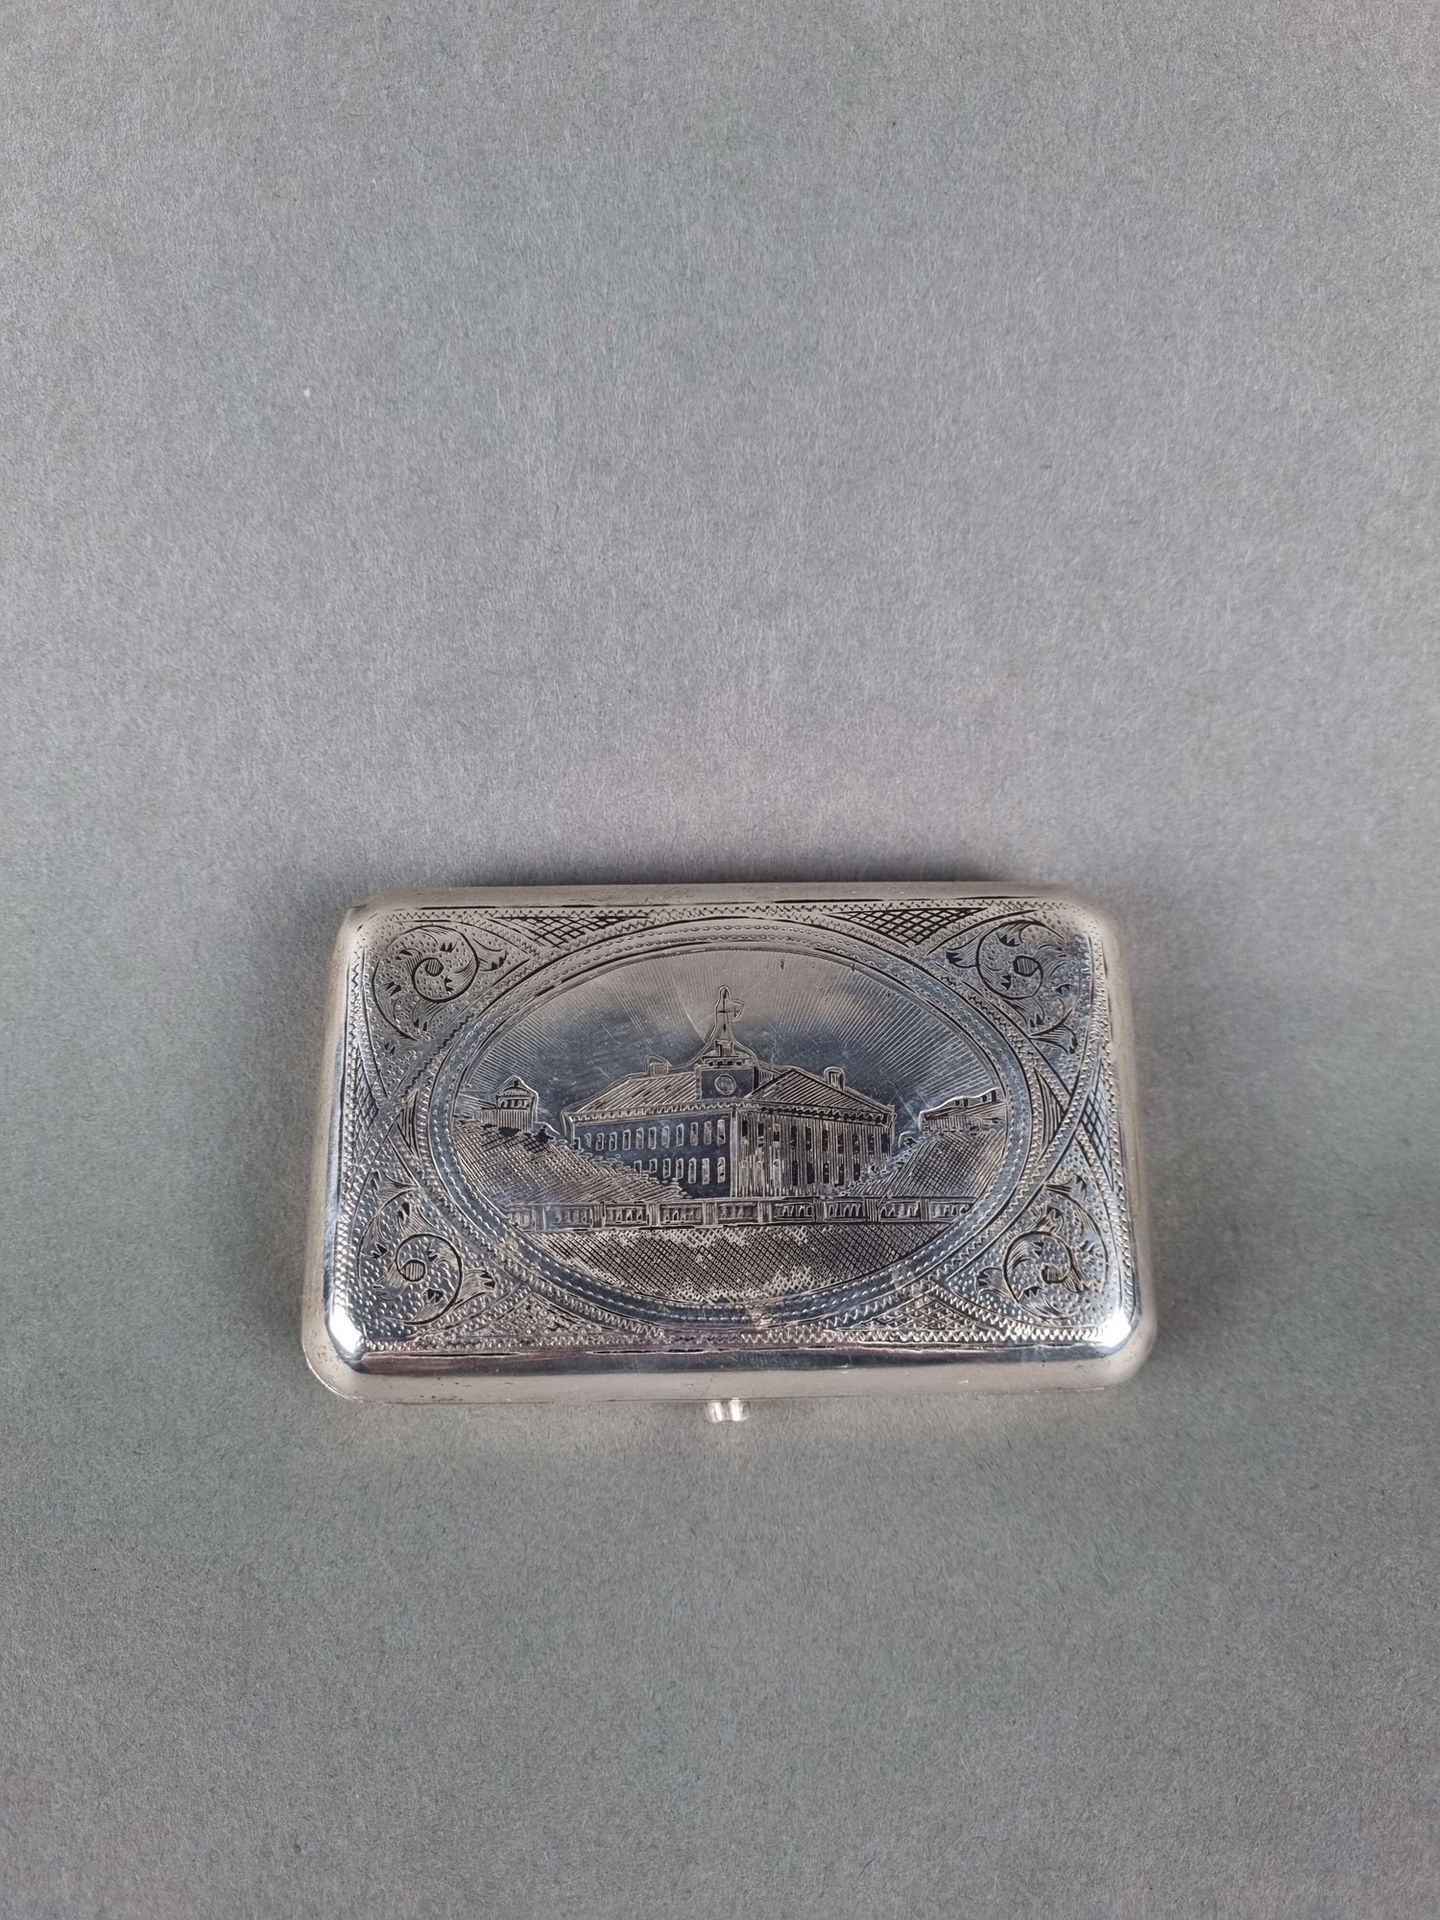 Null Gravierte Dose aus Silber, Moskauer Stempel. 10x6x2 cm